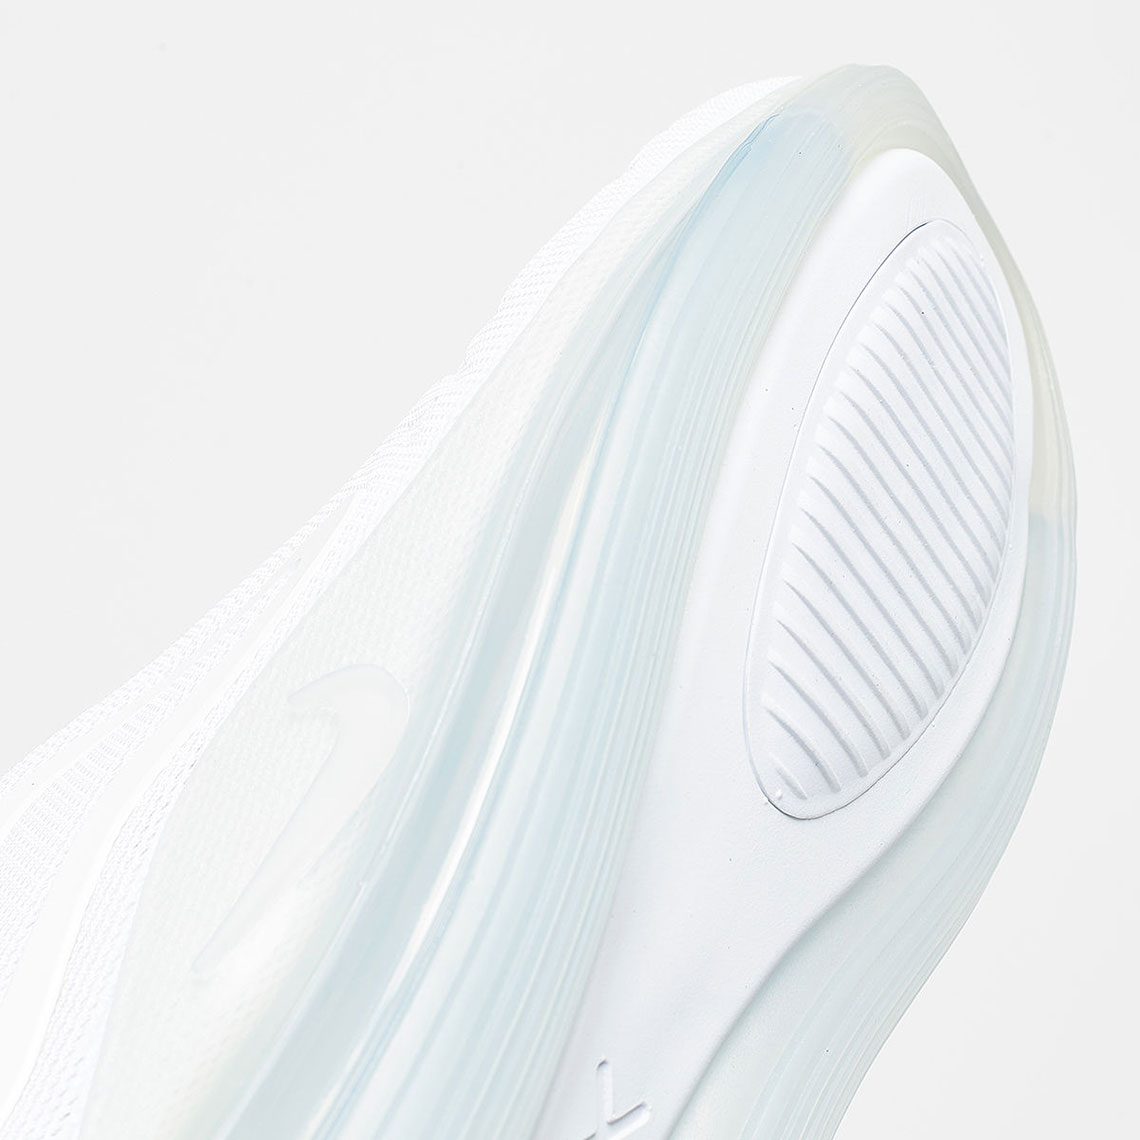 Nike Air Max 720 Pure Platinum AO2924-100 Release Info | SneakerNews.com